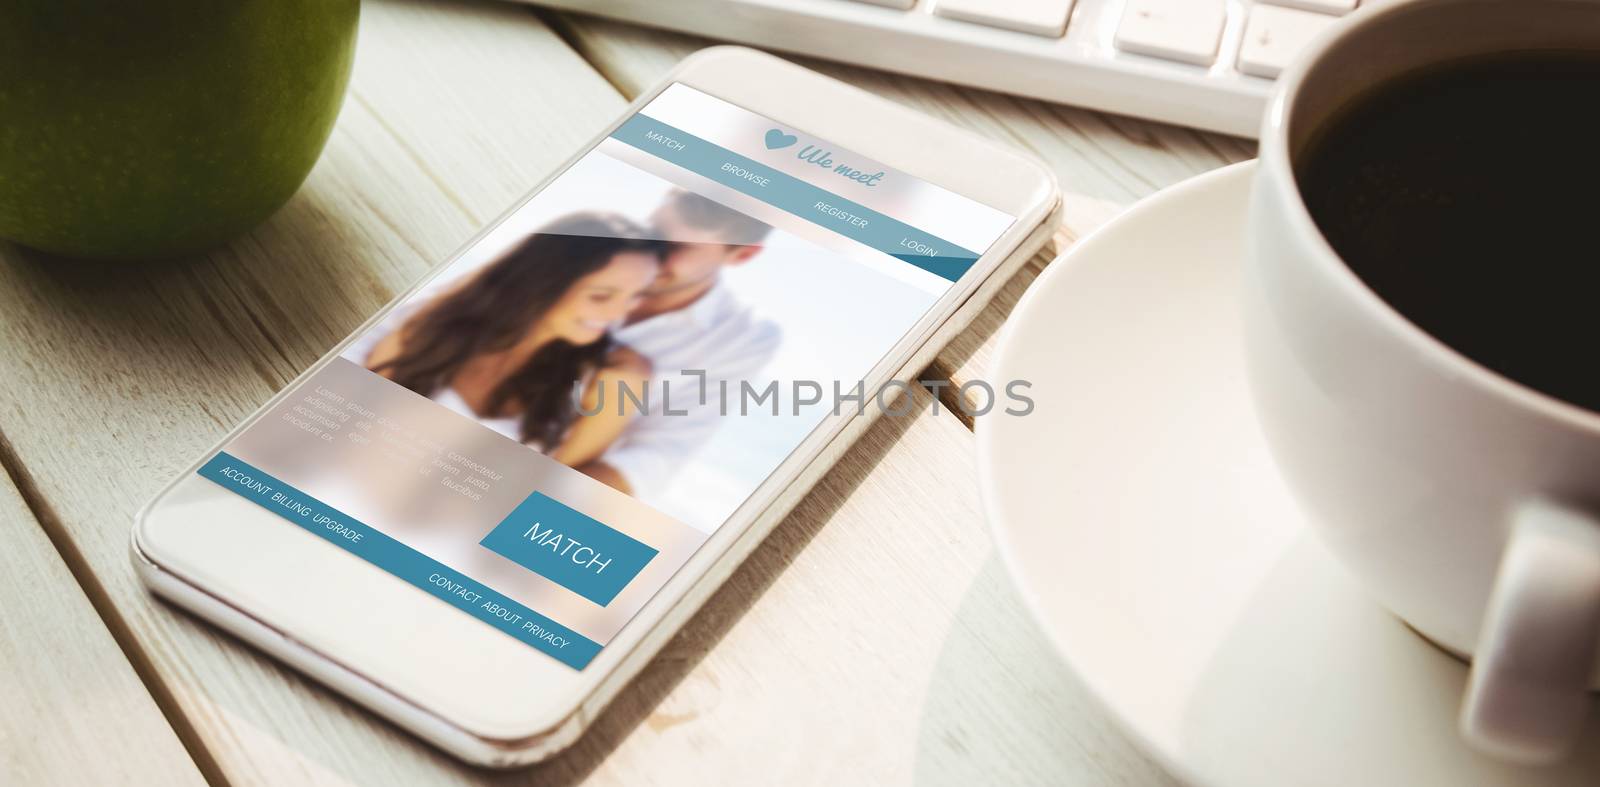 Dating website against smartphone on desk